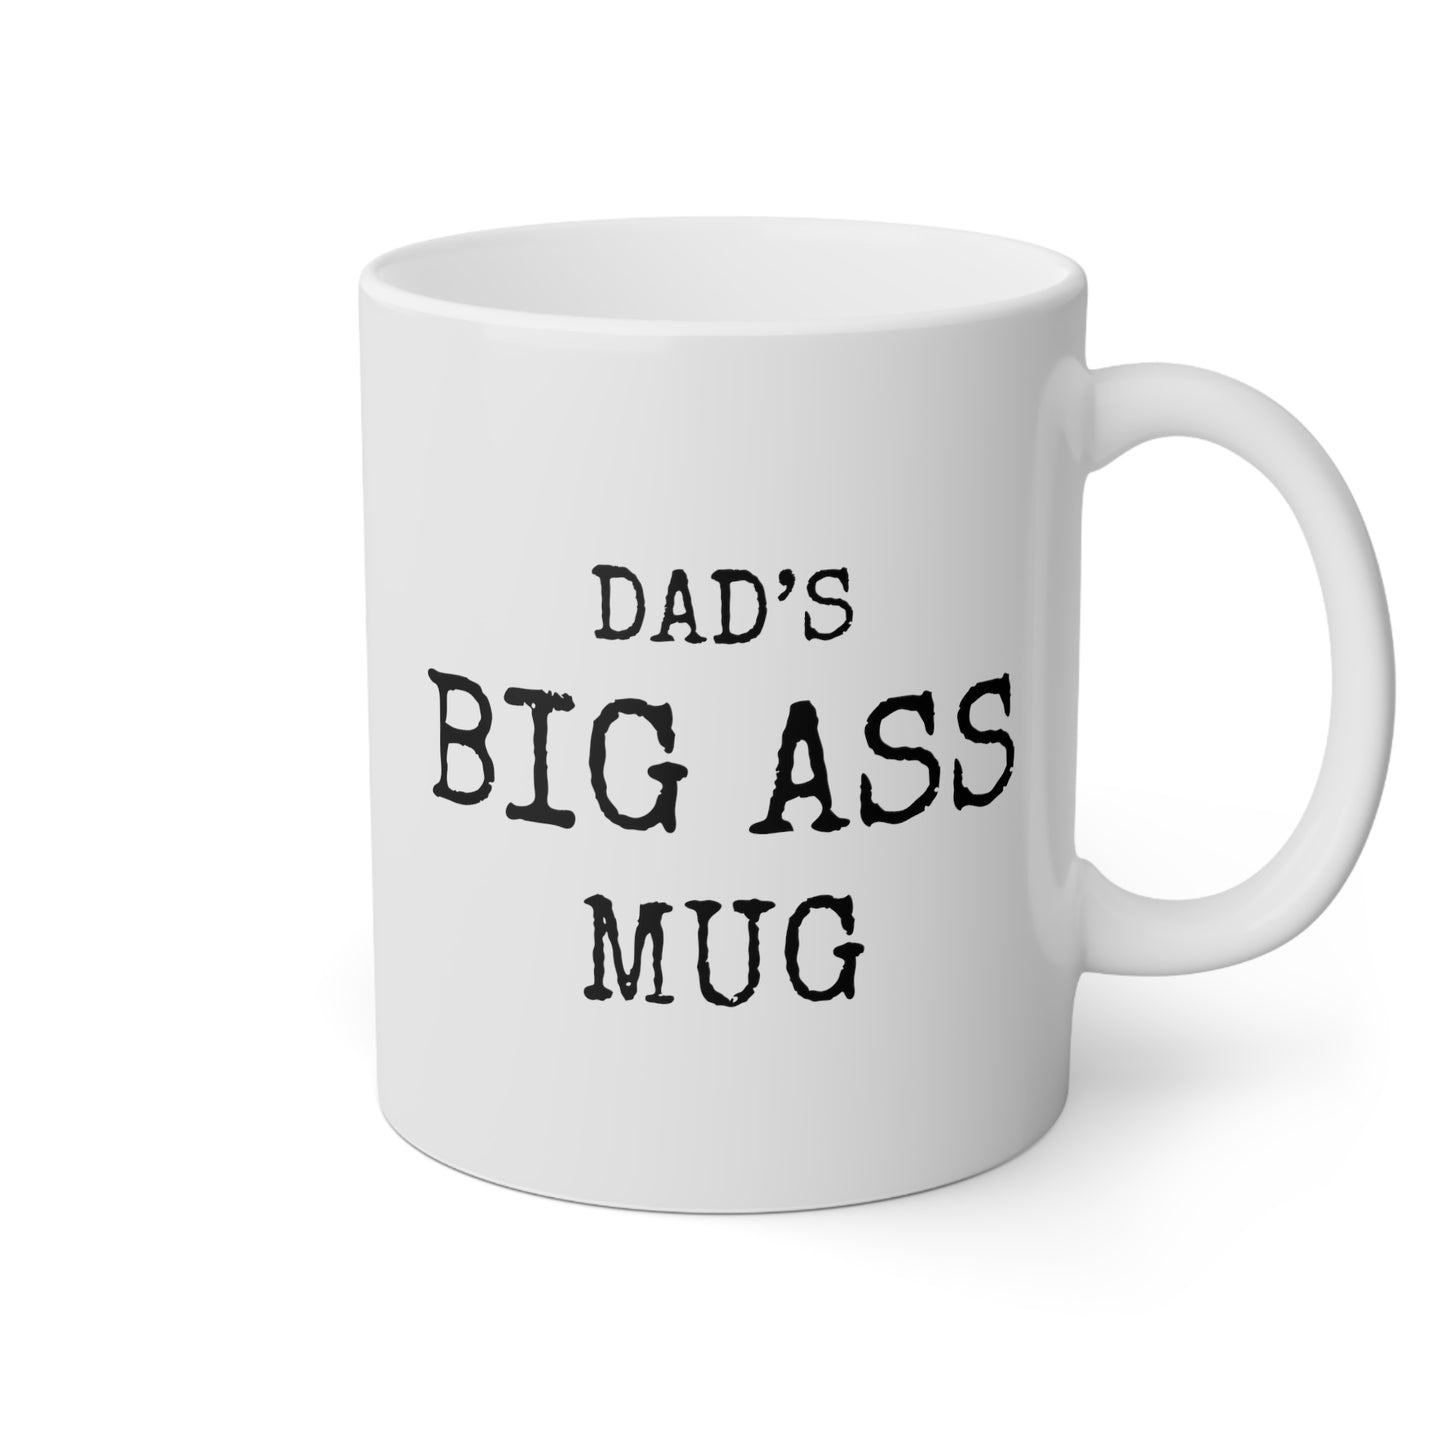 Dad's Big Ass Mug 11oz white funny large coffee mug gift for fathers day custom name waveywares wavey wares wavywares wavy wares